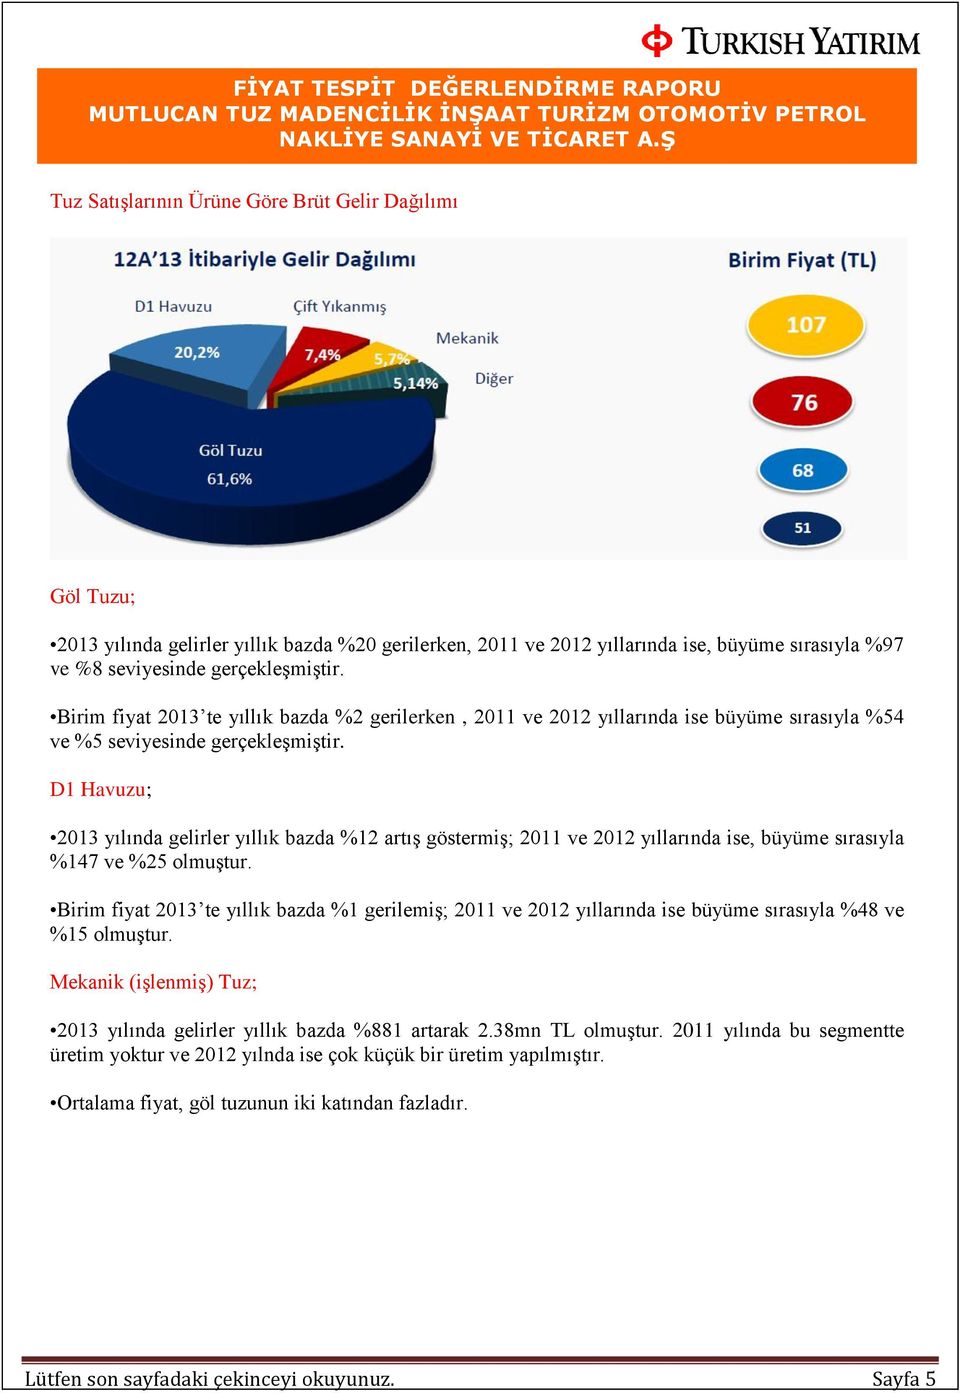 D1 Havuzu; 2013 yılında gelirler yıllık bazda %12 artış göstermiş; 2011 ve 2012 yıllarında ise, büyüme sırasıyla %147 ve %25 olmuştur.